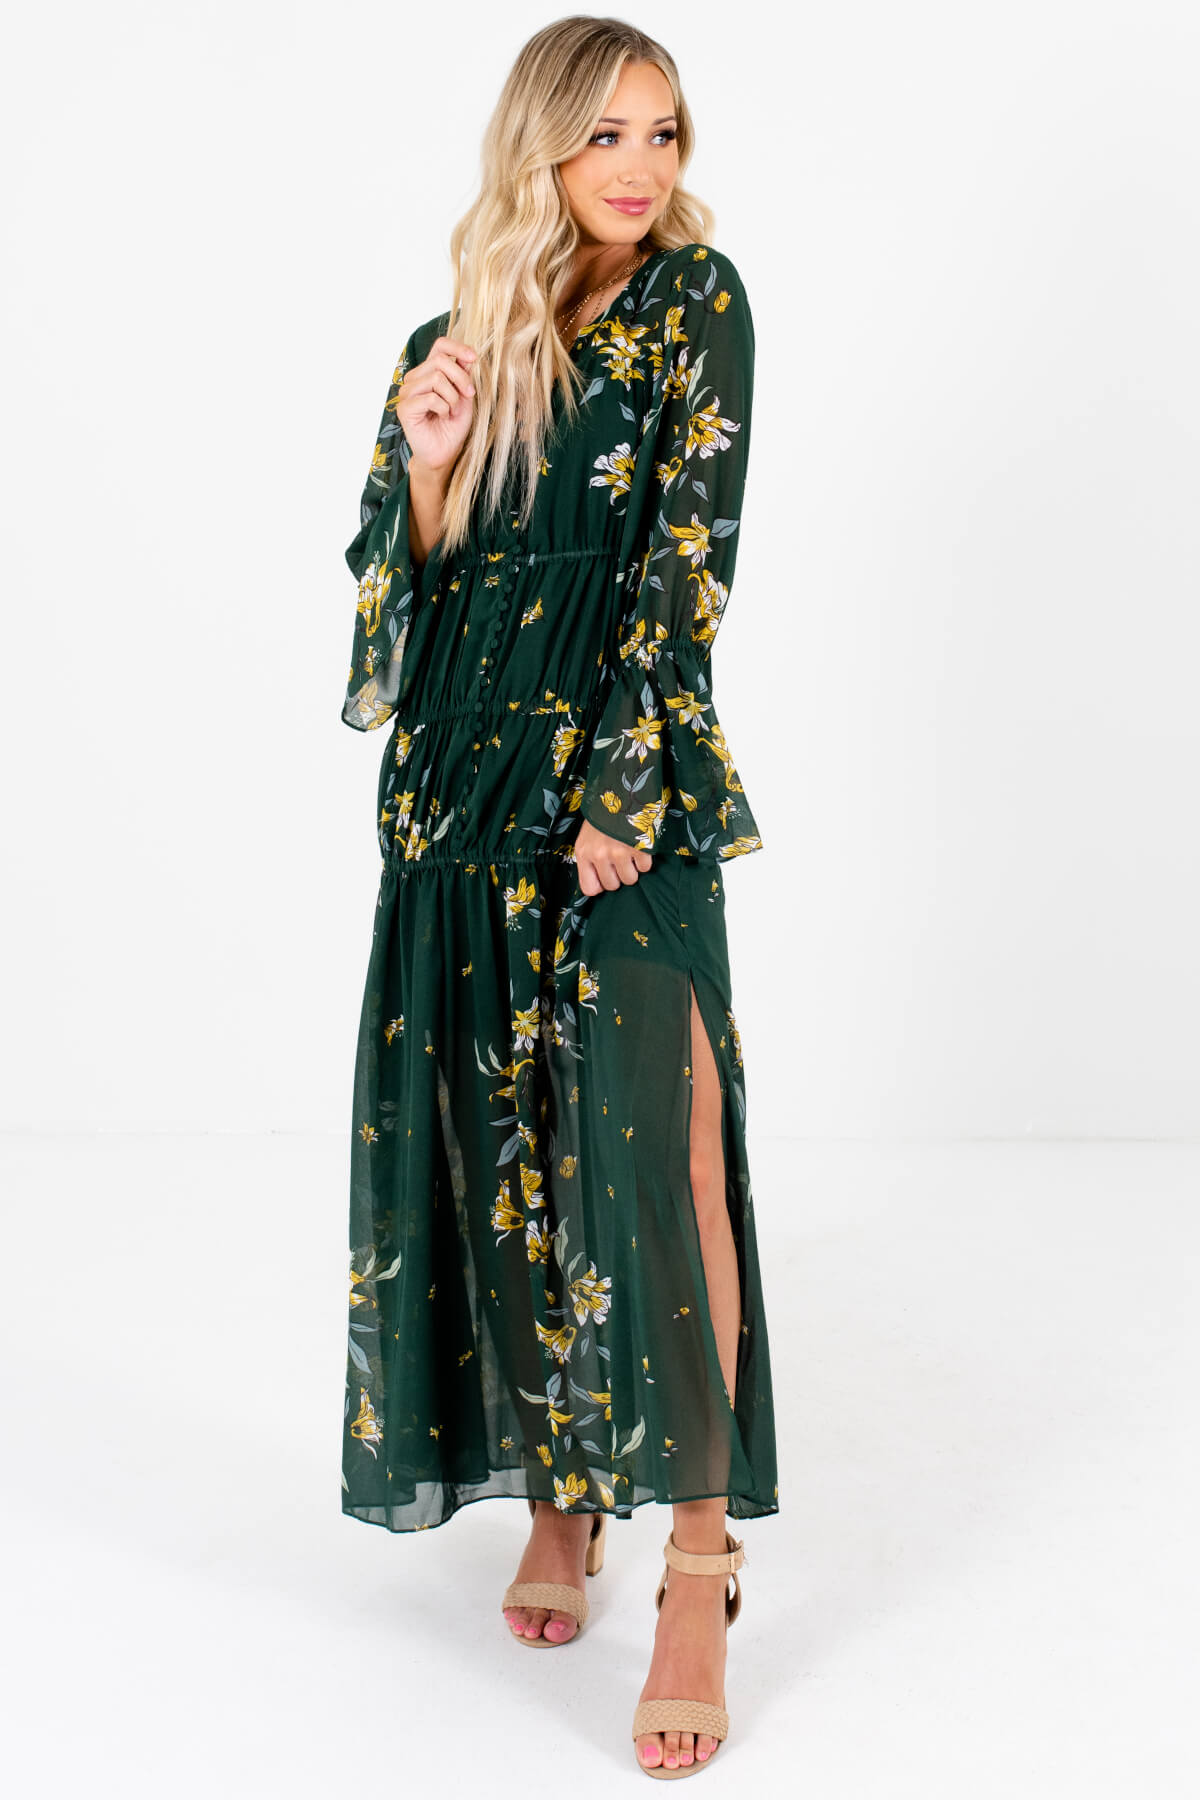 dark floral maxi dress